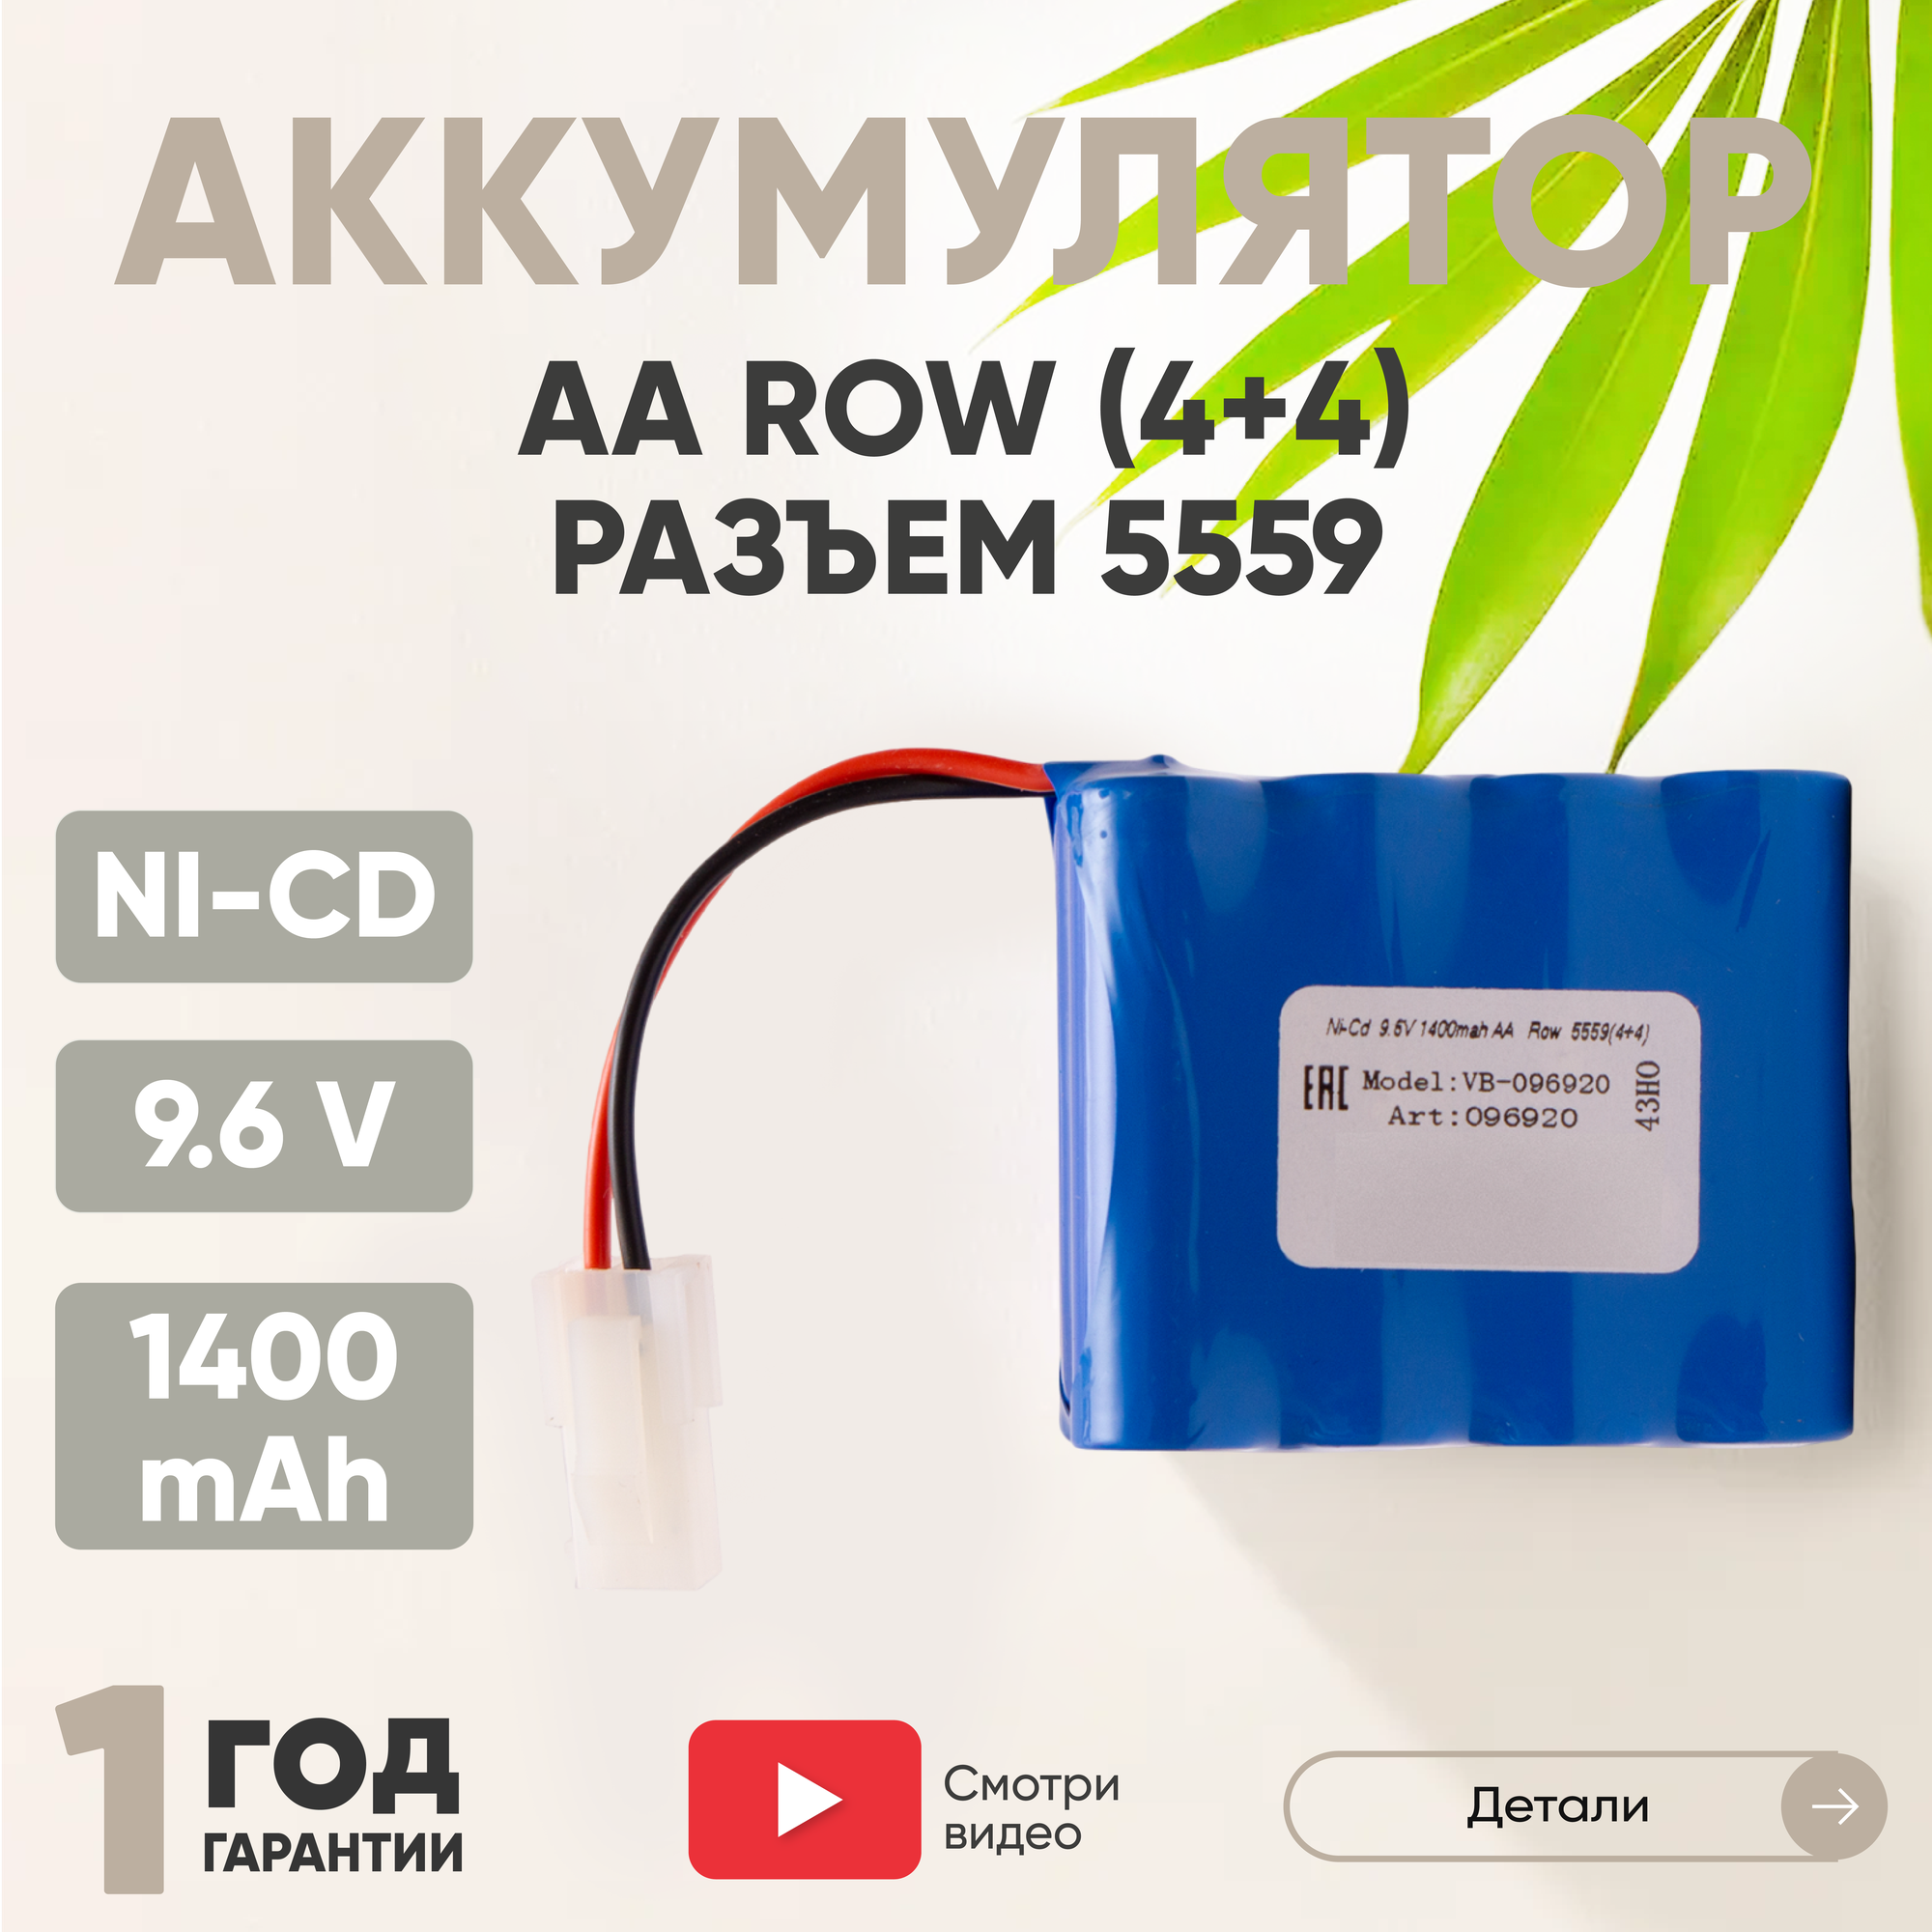 Аккумуляторная батарея (АКБ, аккумулятор) AA Row, разъем 5559 (4+4), 1400мАч, 9.6В, Ni-Cd